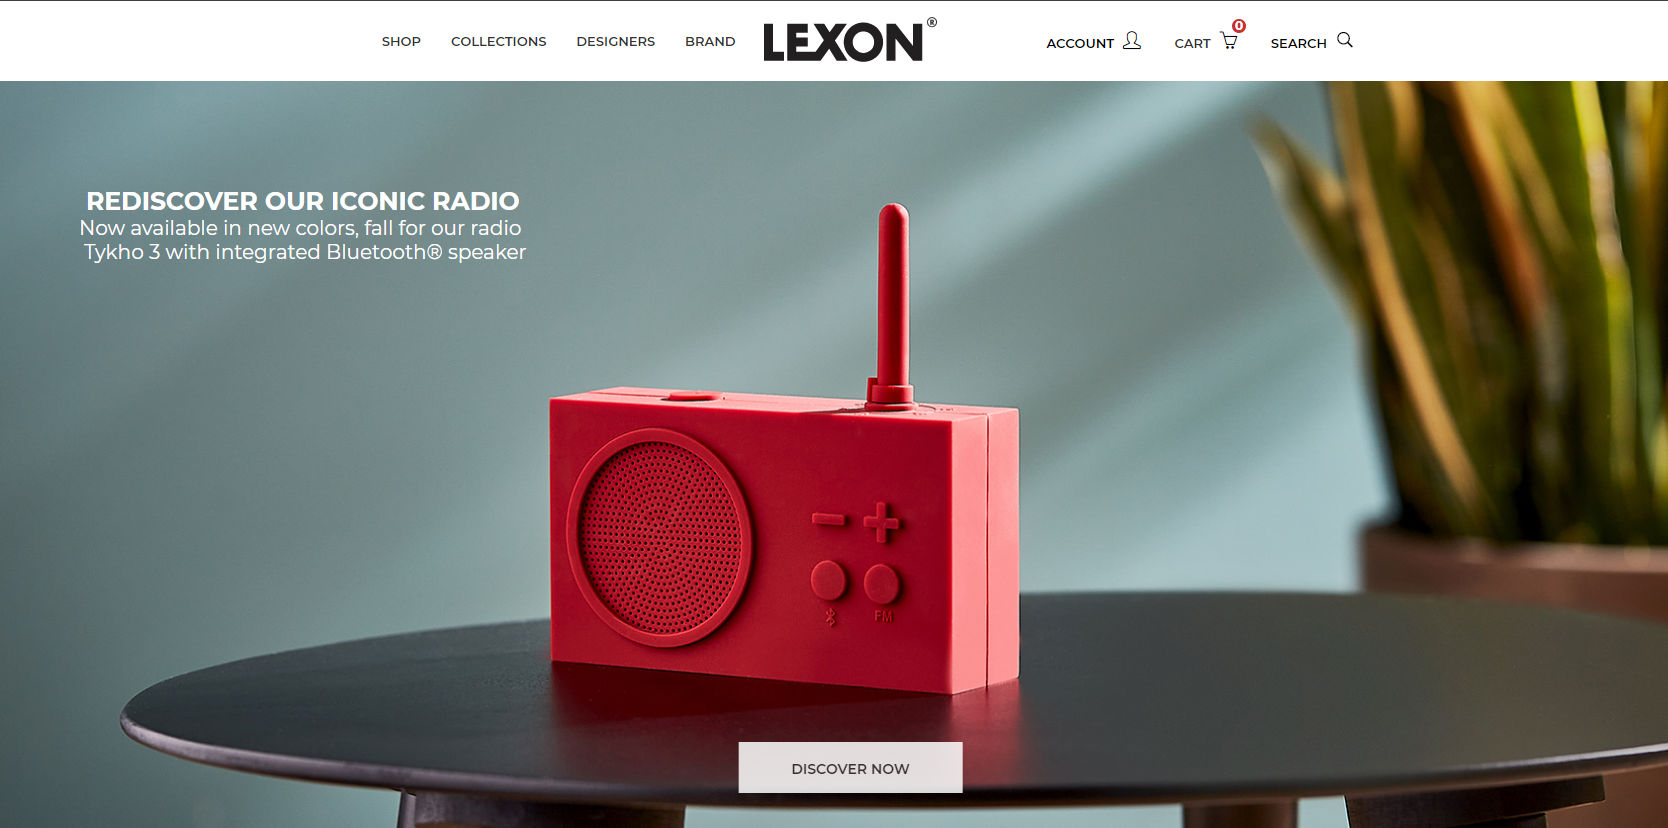 Lexon官网-浪漫法国时尚品牌 乐上 “设计艺术的复兴”